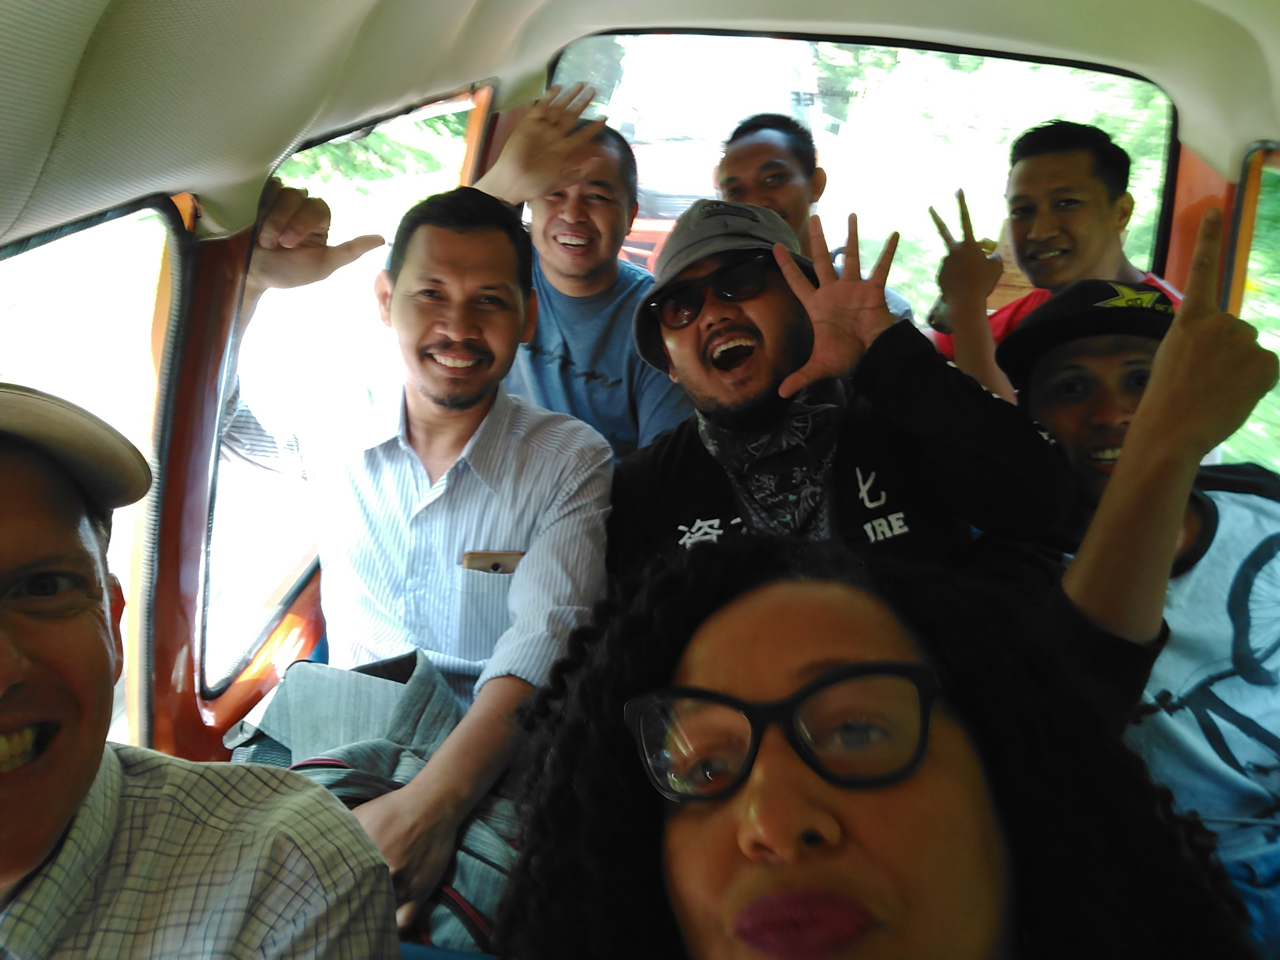 selfie group shot on bus